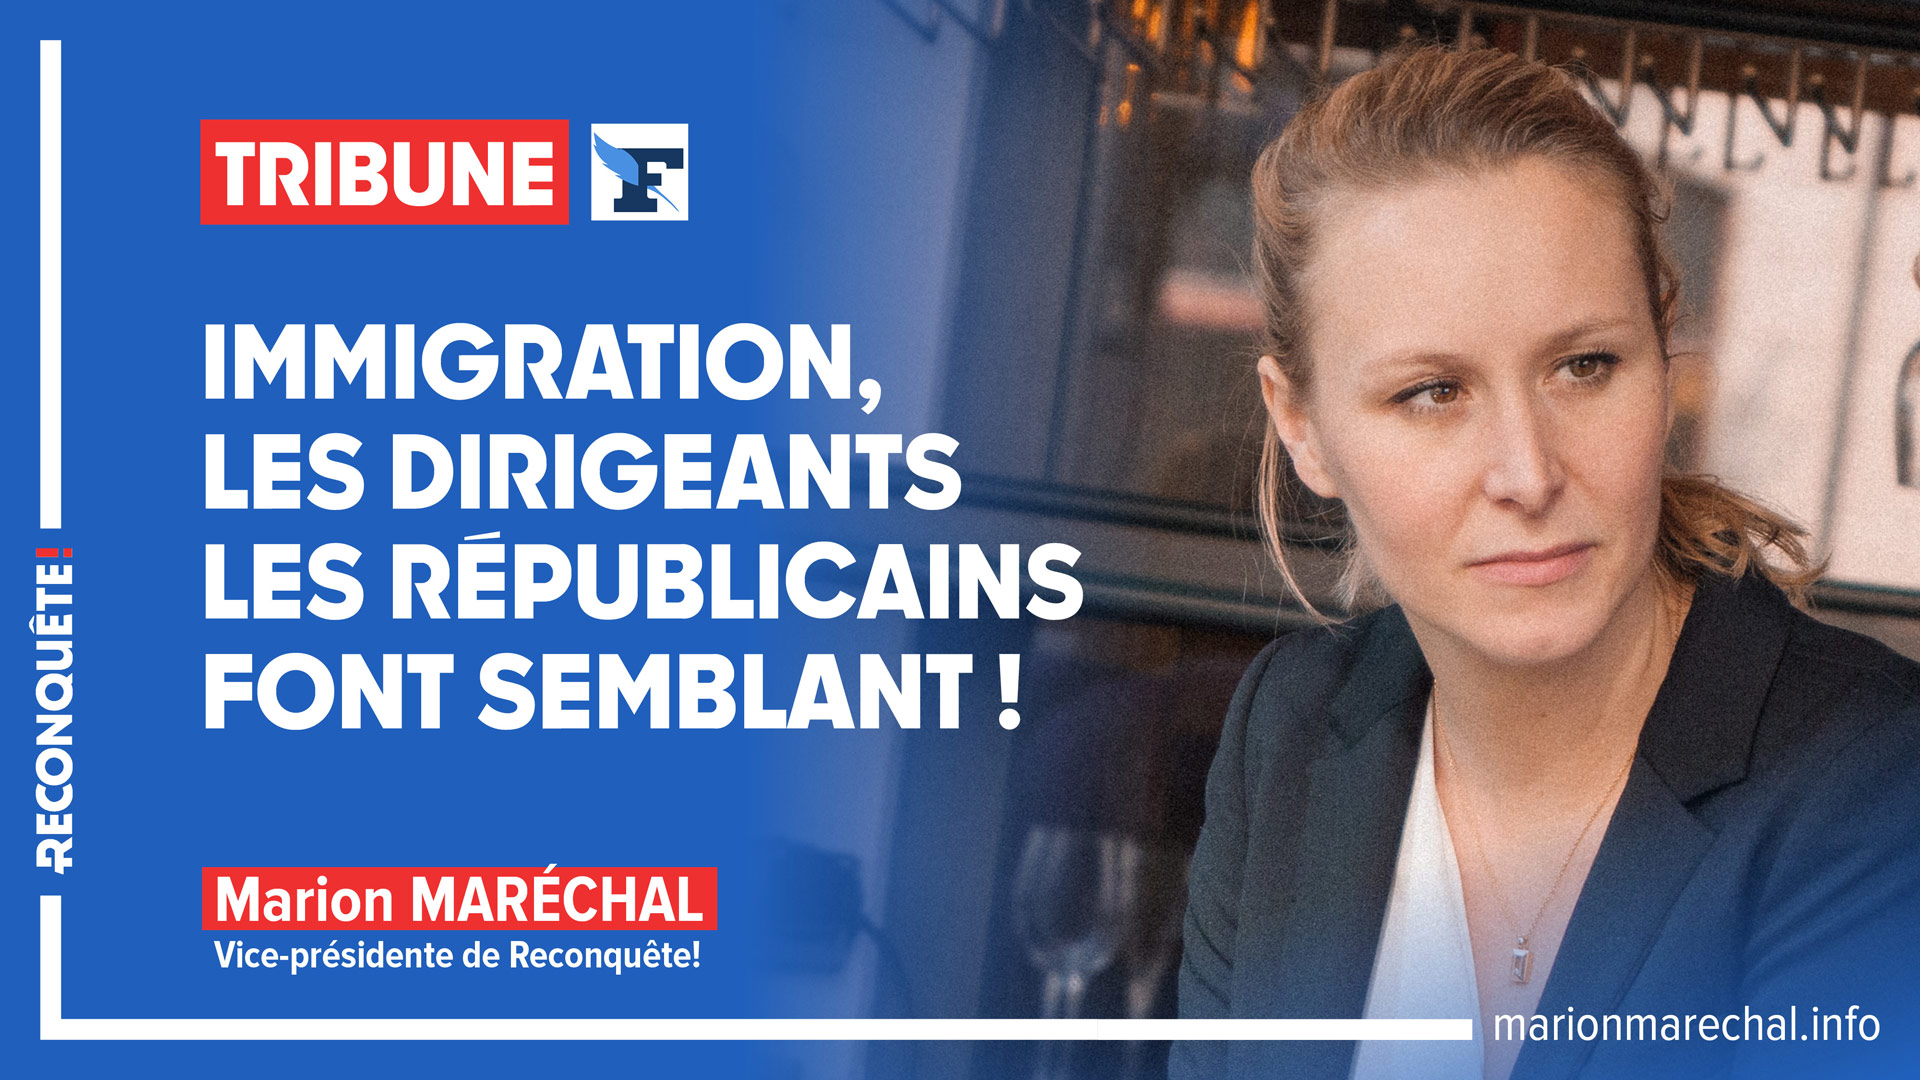 Tribune Le Figaro - Immigration - Les Républicains